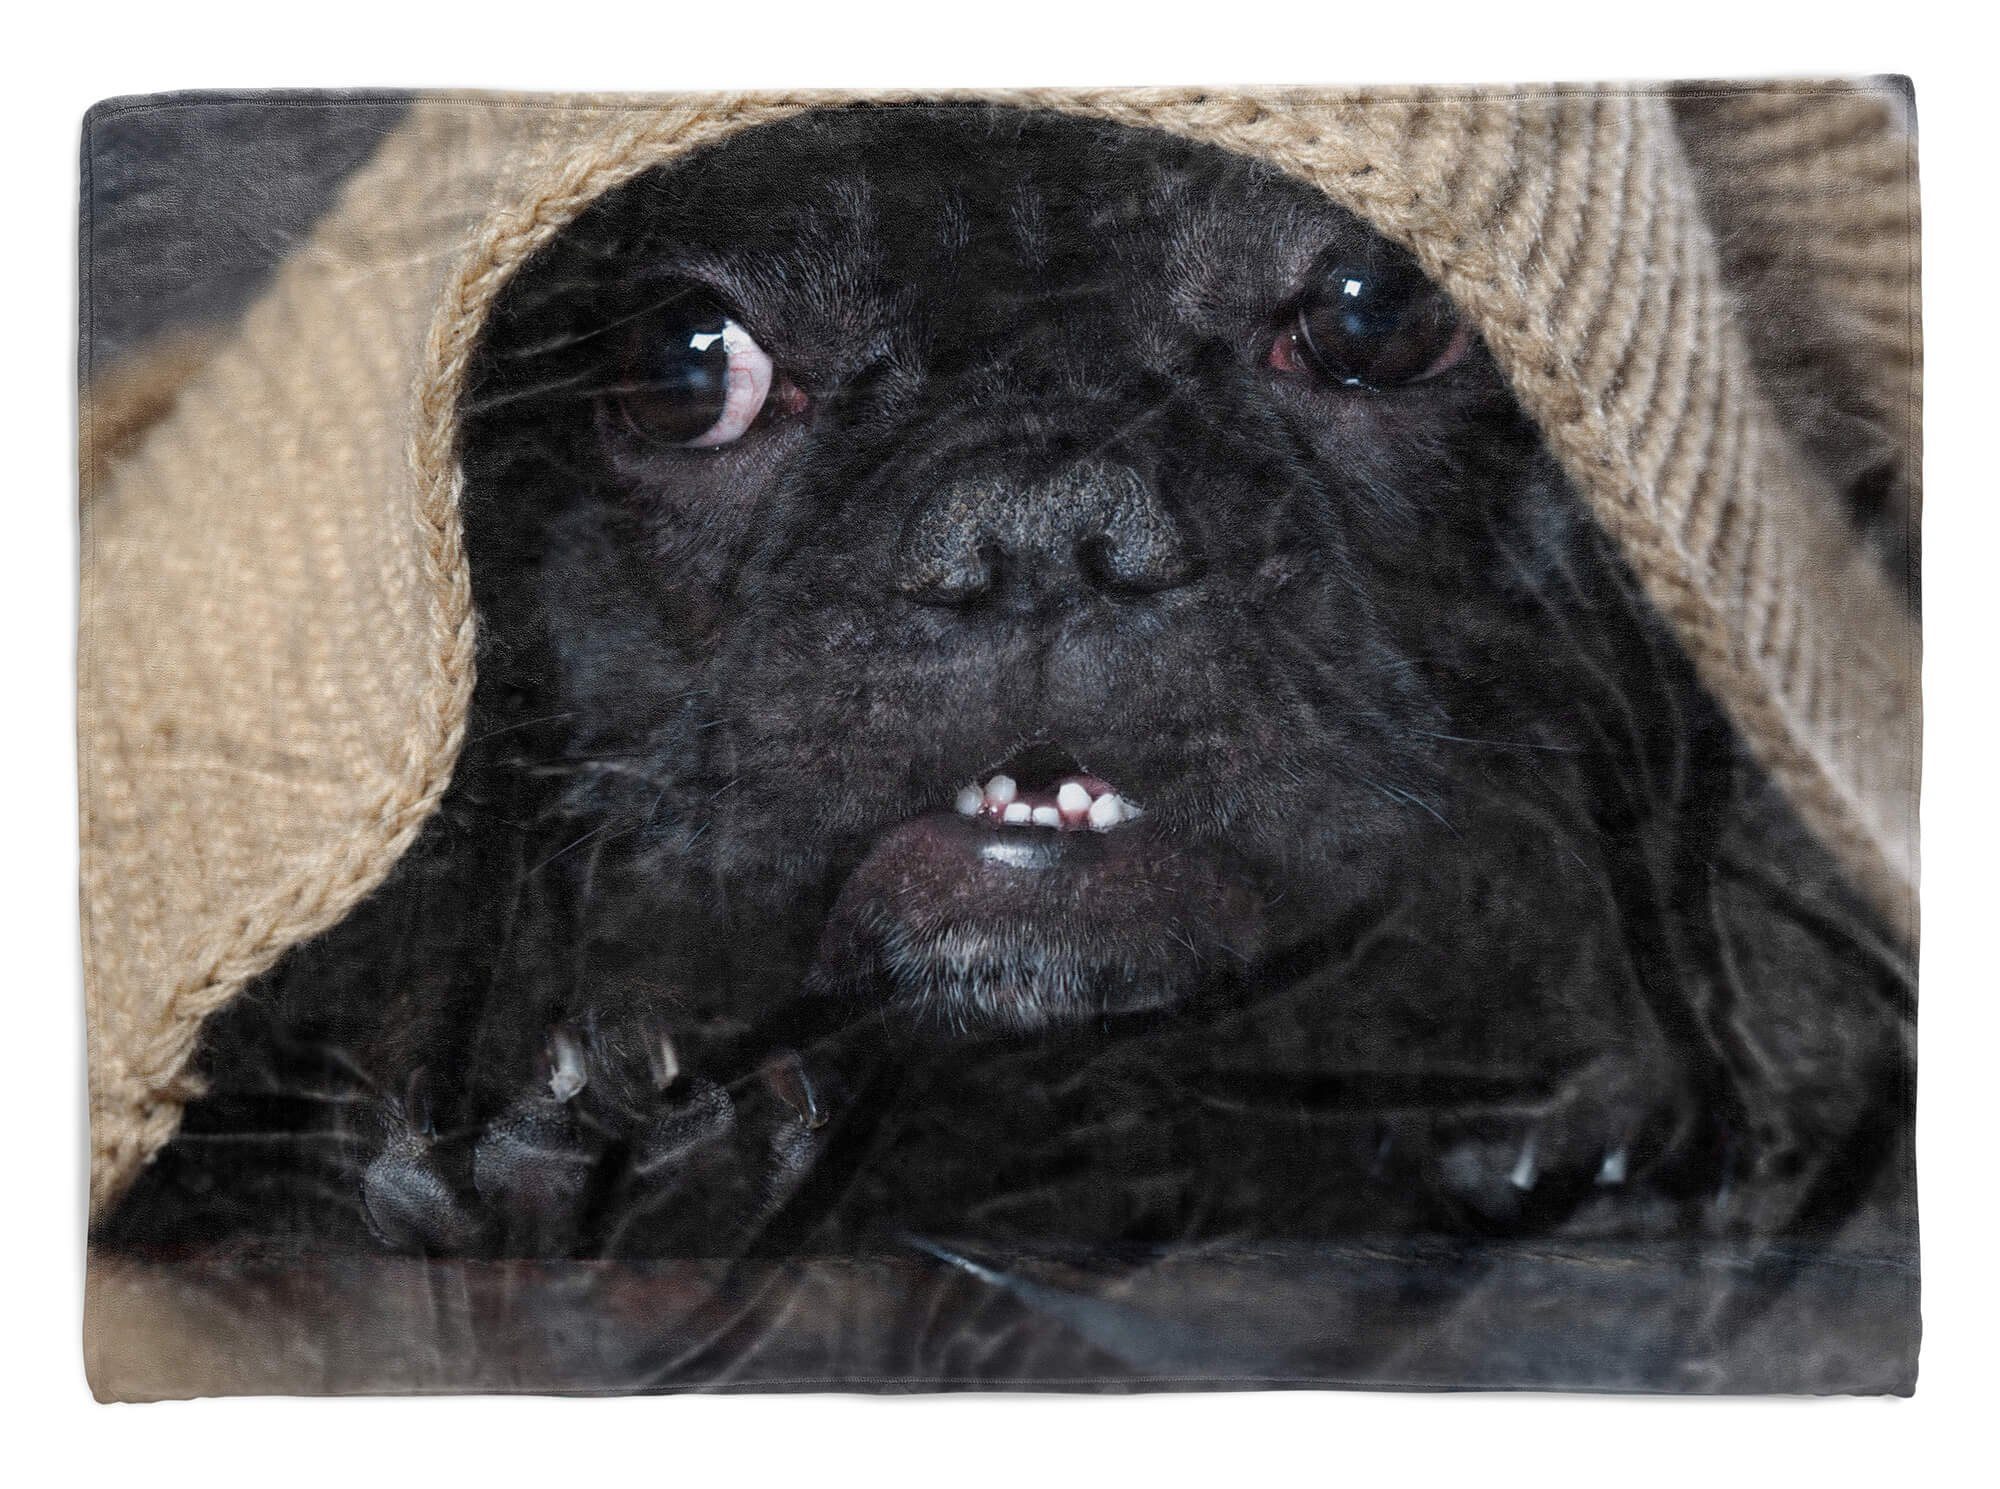 Sinus Art Handtücher Handtuch süßer Tiermotiv Strandhandtuch Hund, kleiner mit Saunatuch Handtuch Baumwolle-Polyester-Mix Kuscheldecke (1-St)